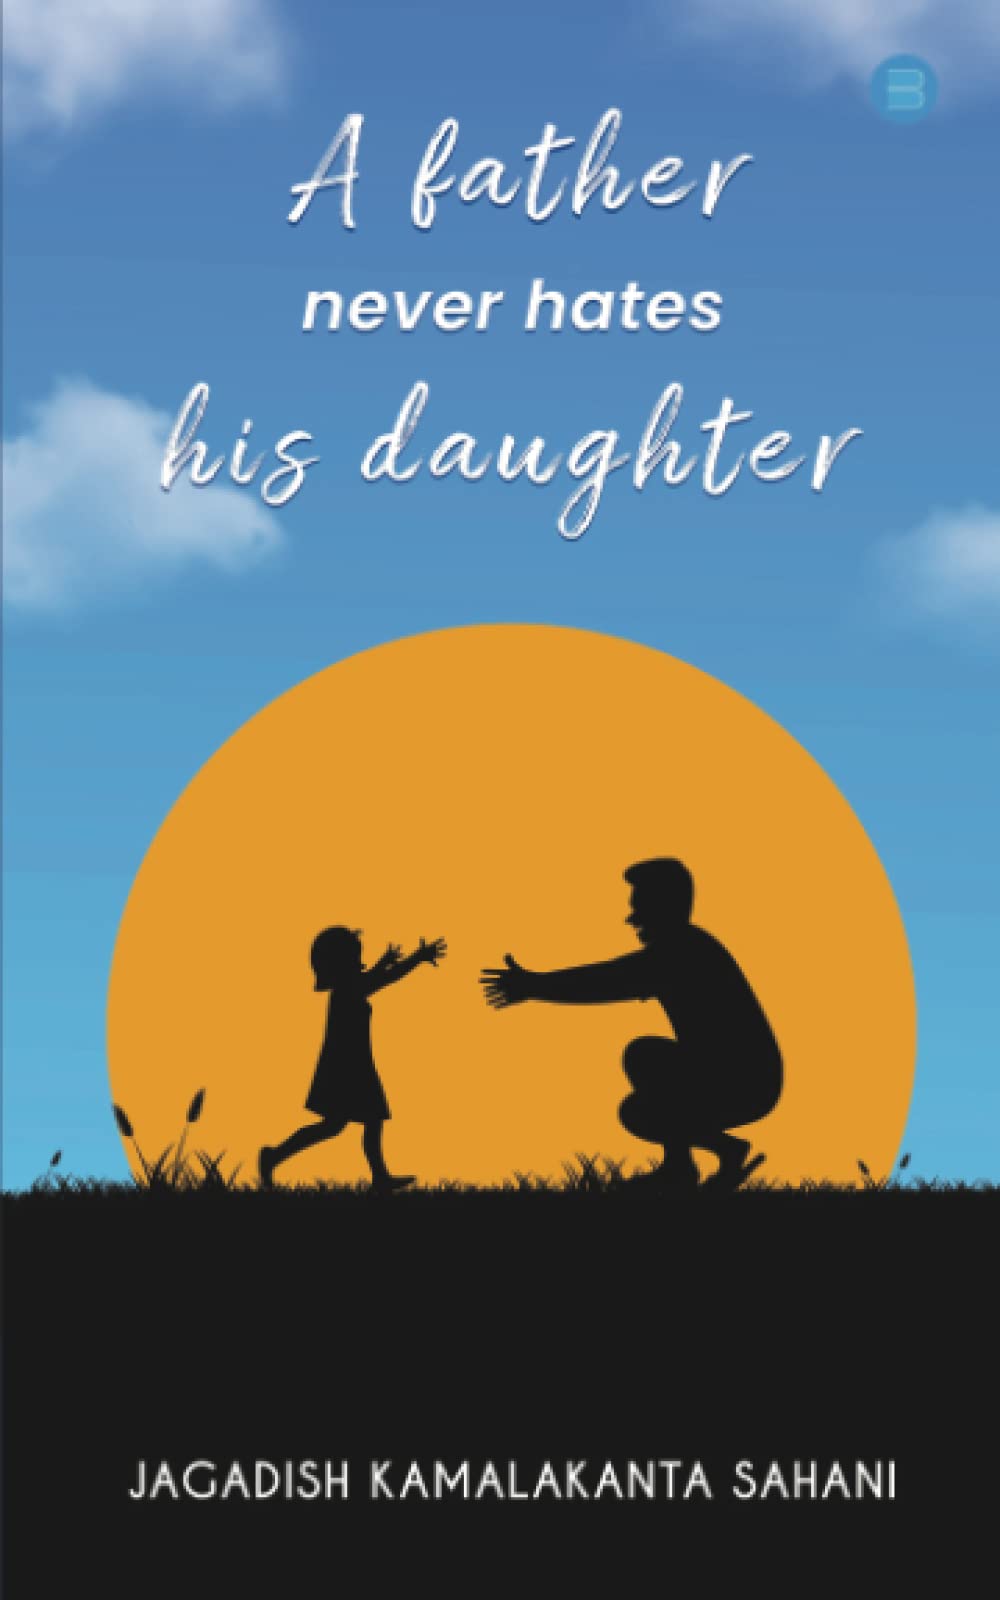 A Father Never Hates His Daughter by Jagadish Kamalakanta Sahani